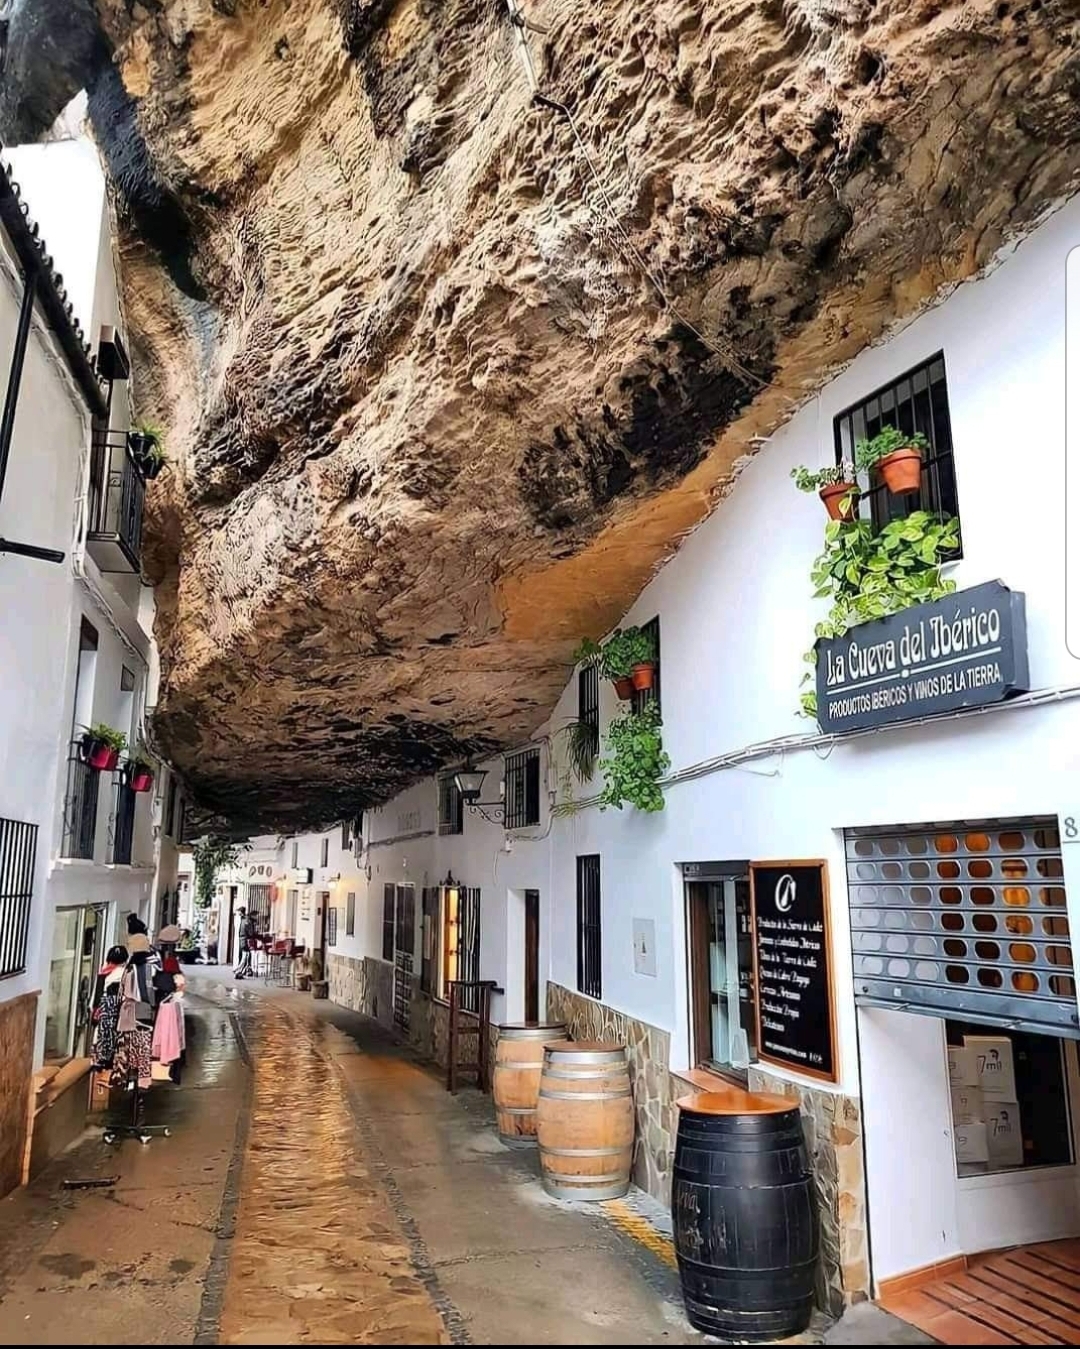 Setenil De Las Bodegas In Cadiz, Spain